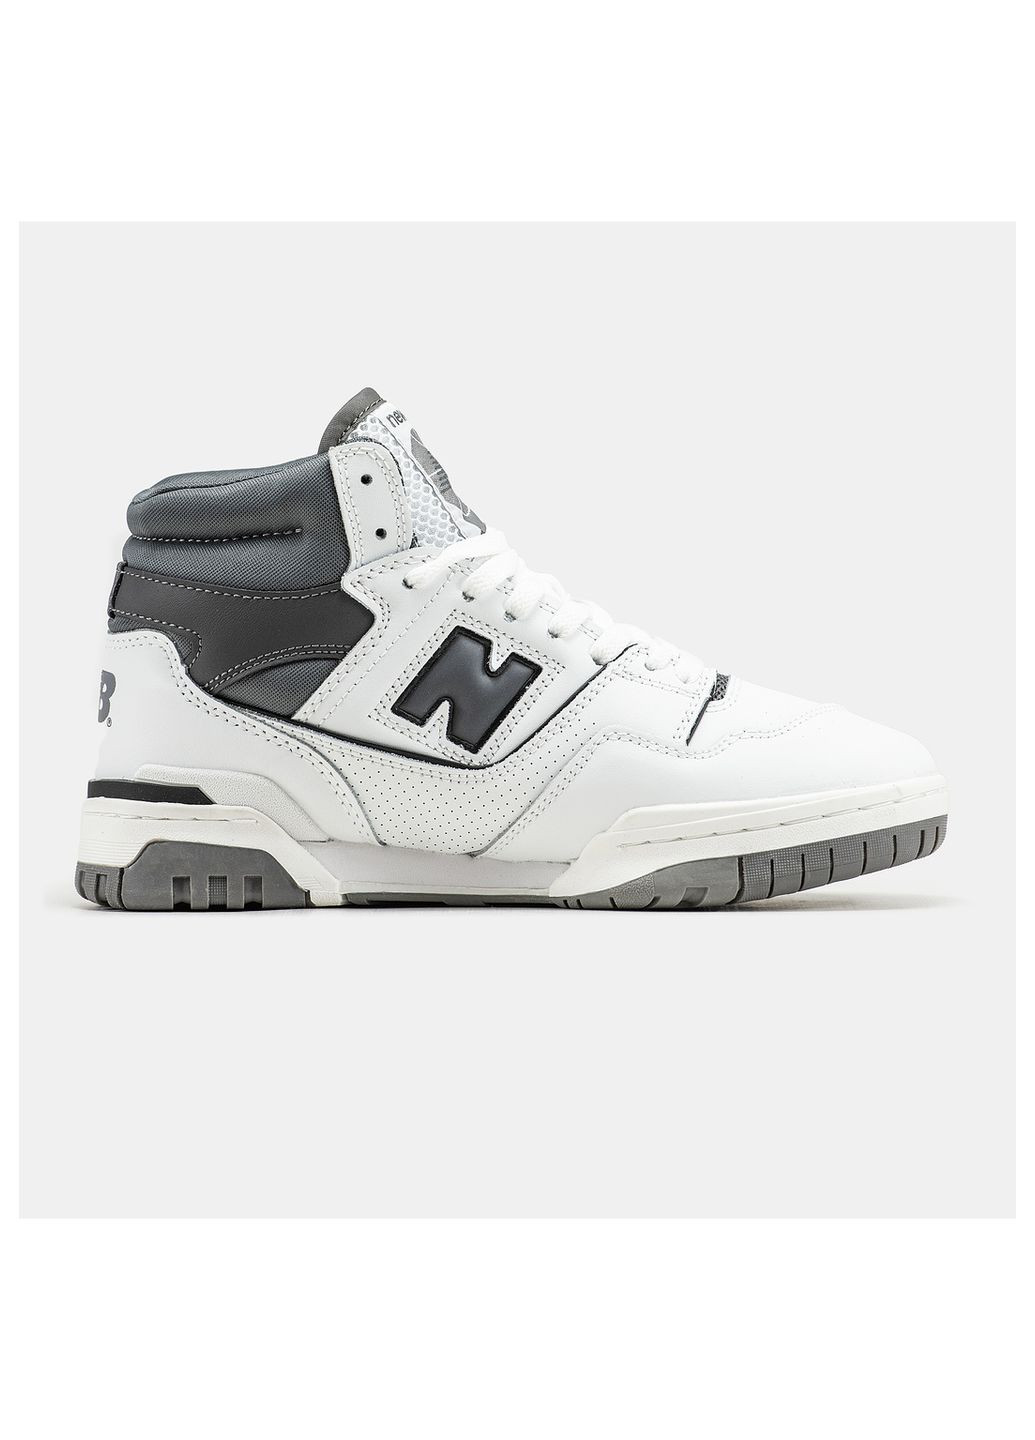 Цветные демисезонные кроссовки мужские New Balance 650 White/Gray